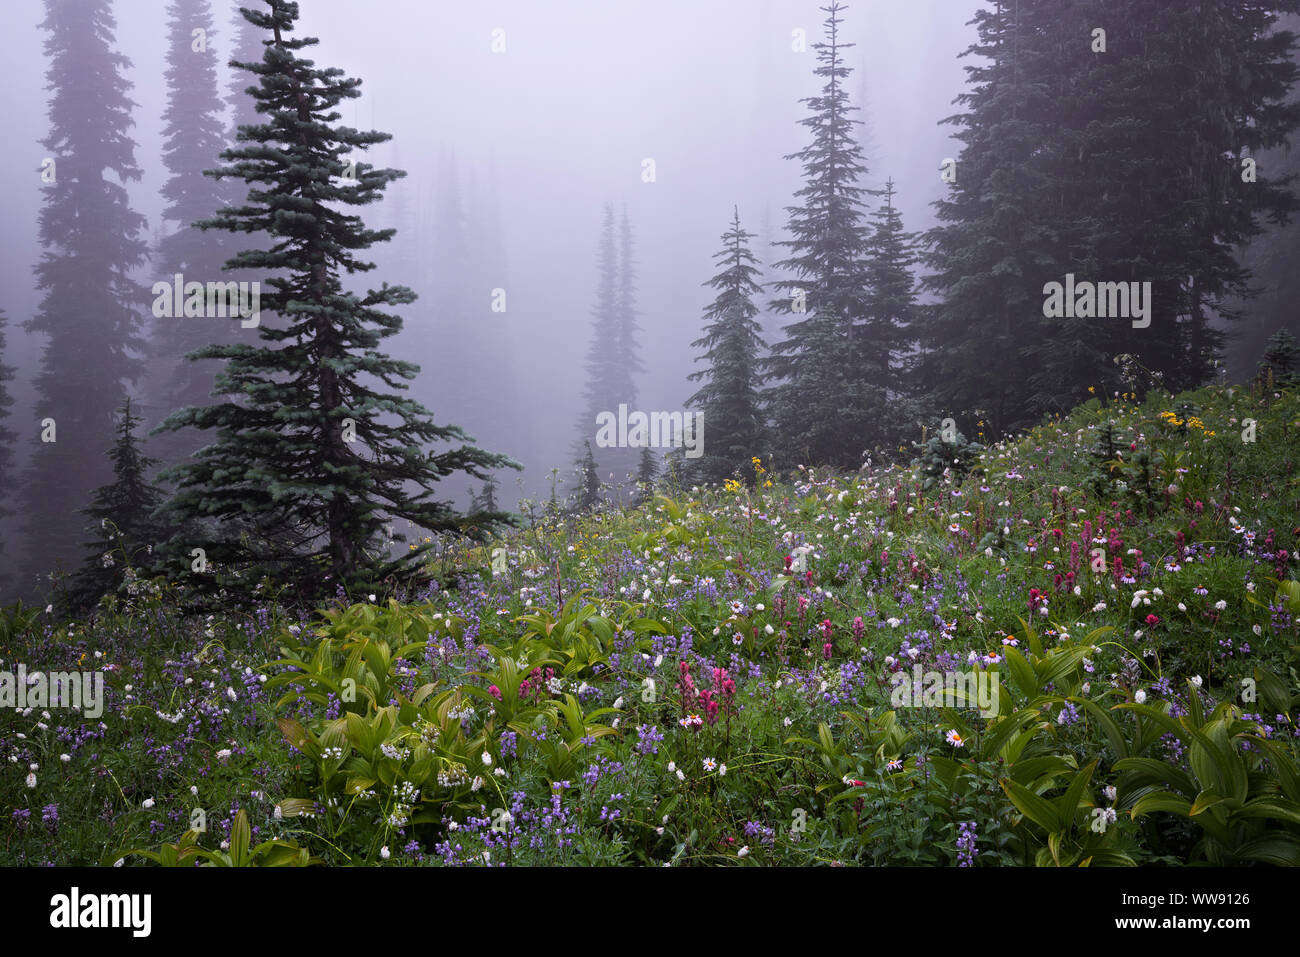 Die weiche cottony Blüte des bistort gibt einen Verschneiten Aussehen unter der Nebel im Paradies Wiese von Washingtons Mt Rainier National Park. Stockfoto